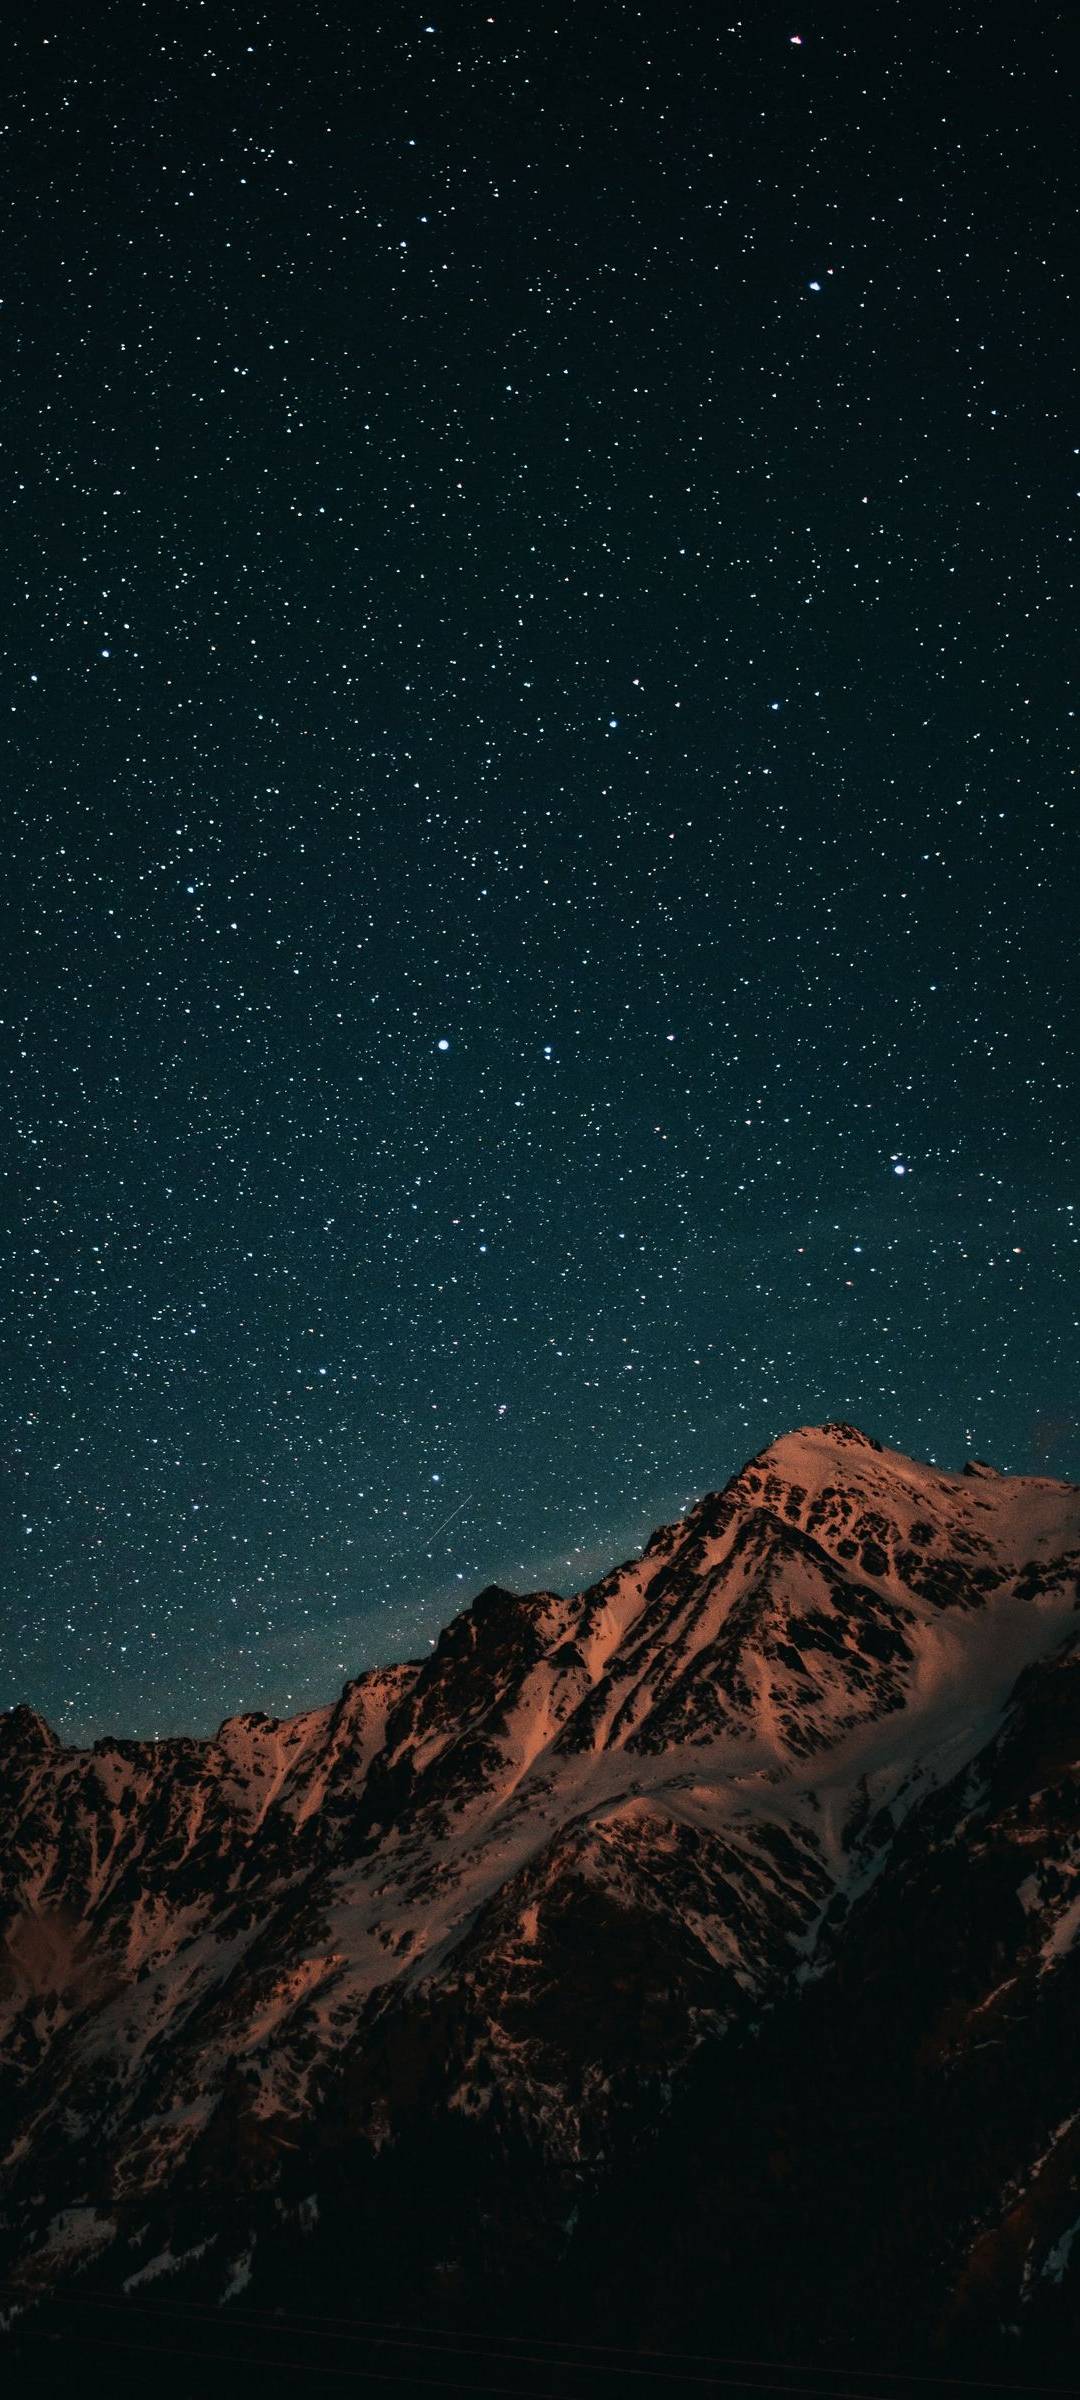 Wallpaper Mountain, Alps, Snowy Mountains, Mountain Range, Snow, Background  - Download Free Image